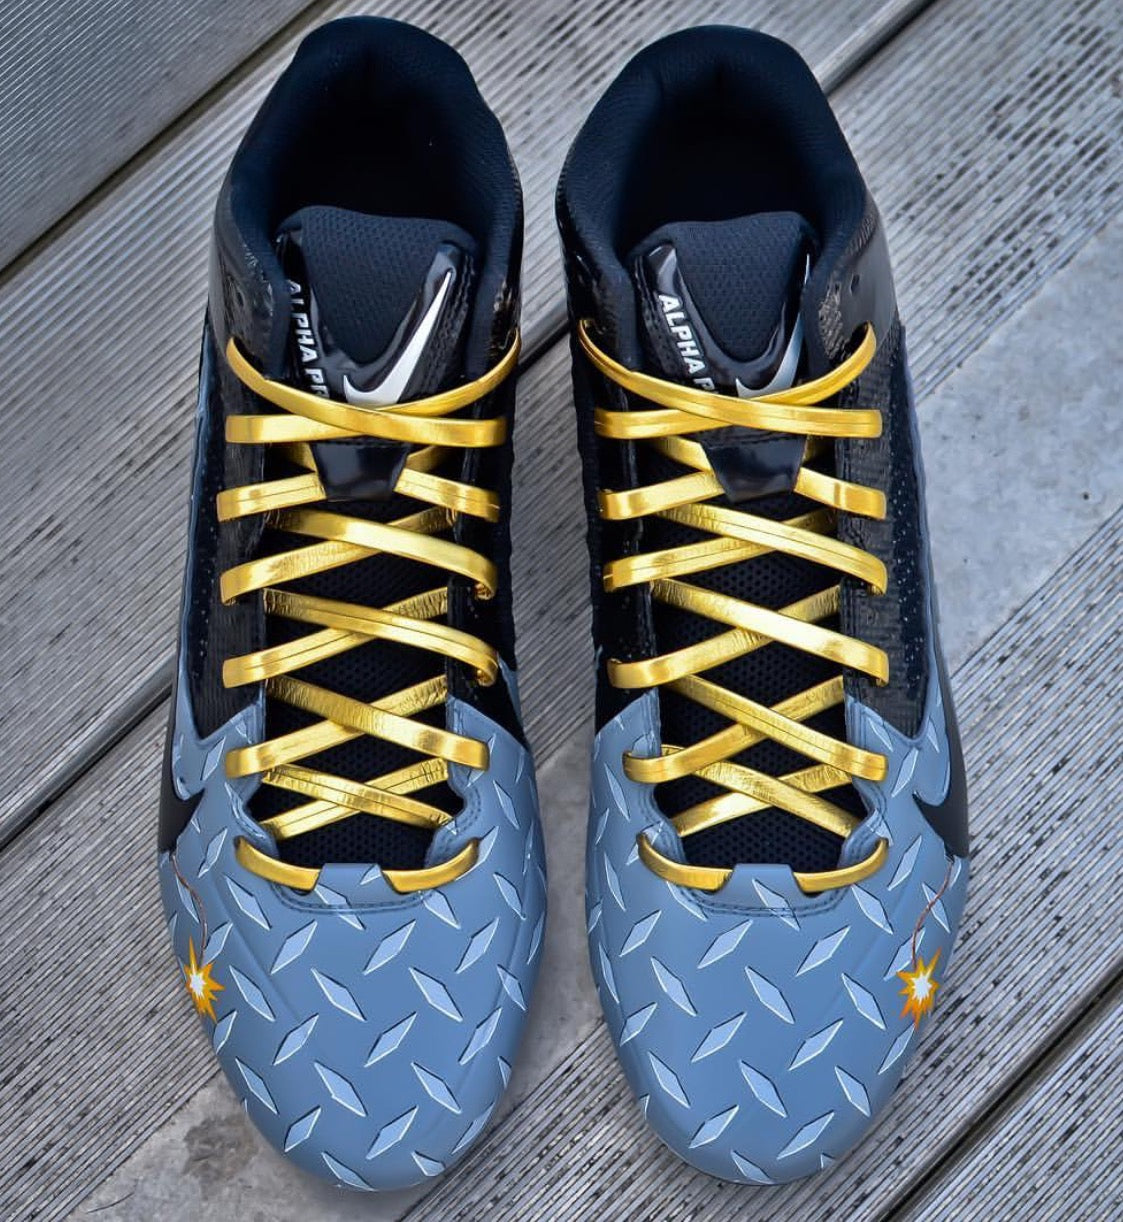 golden shoe laces